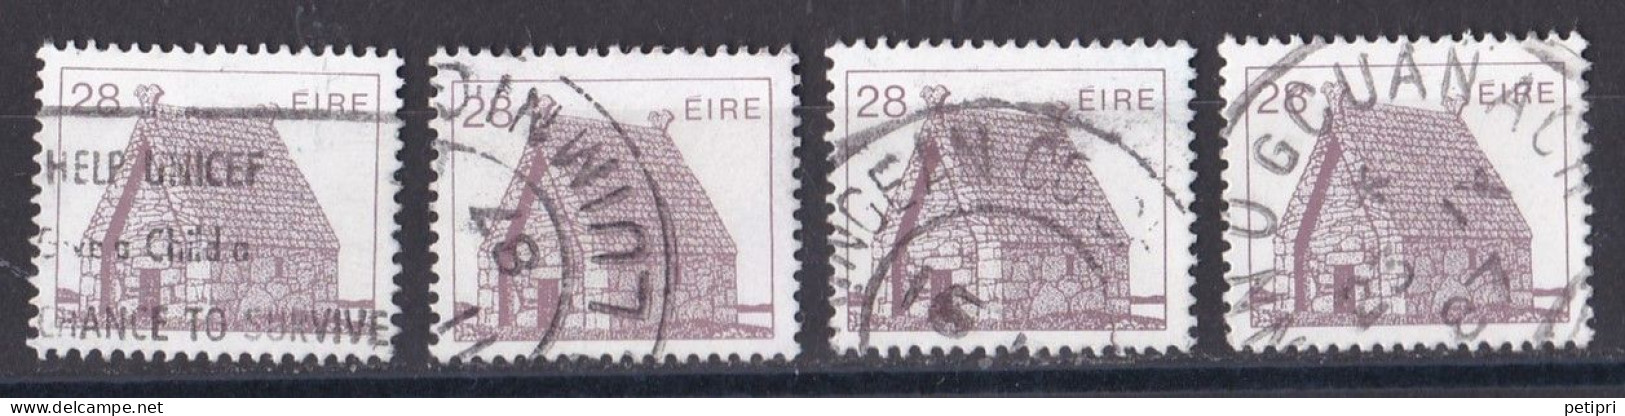 République D Irlande - 1980  89 -   Y&T  N ° 572  Oblitéré - Used Stamps